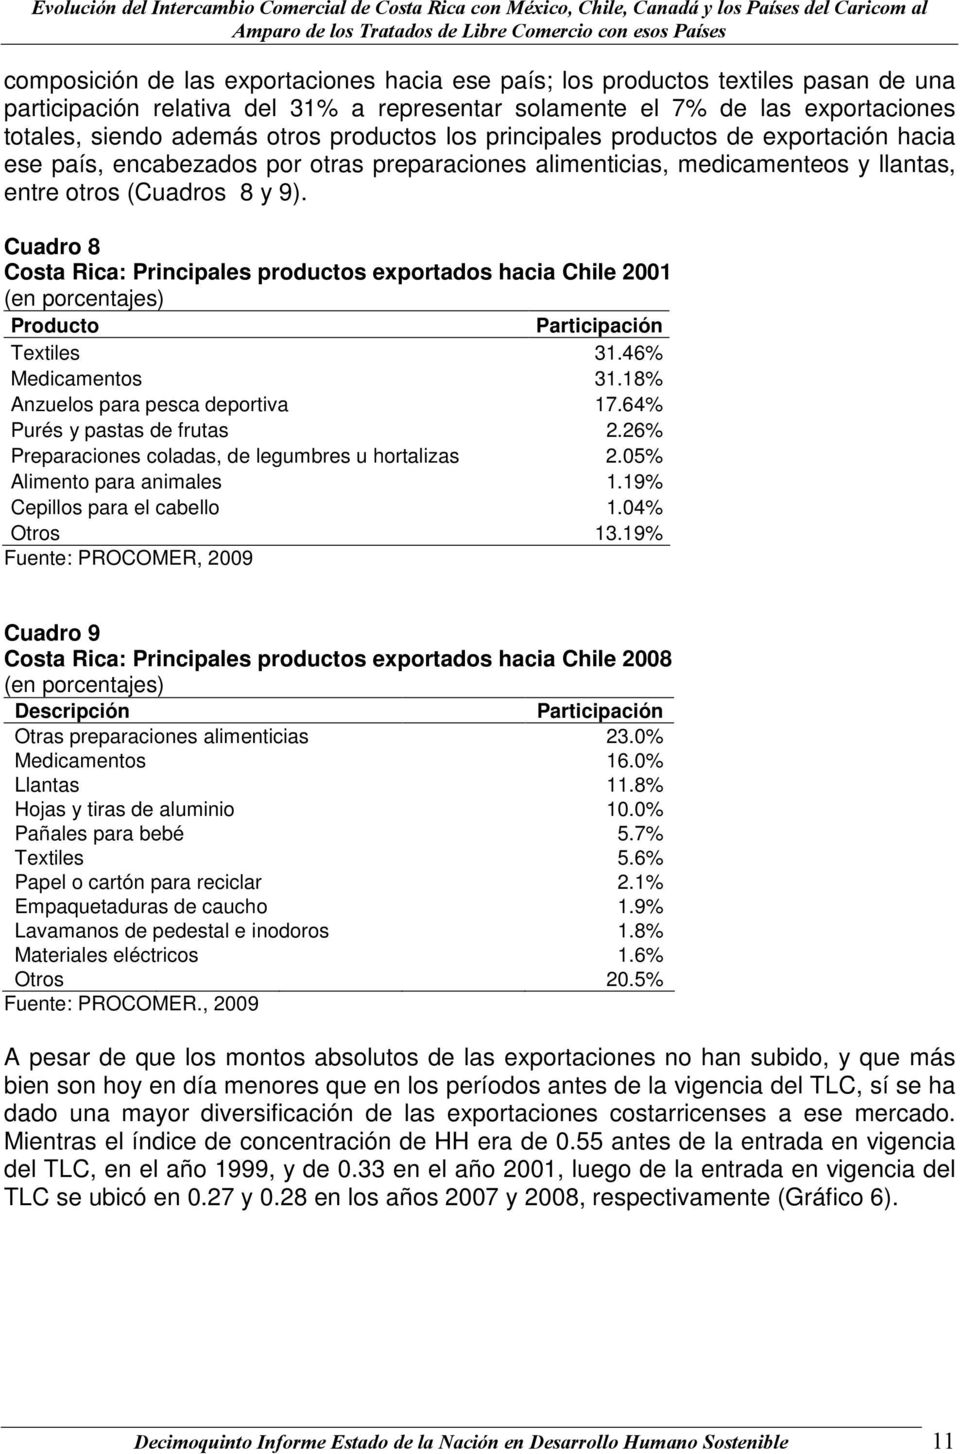 Cuadro 8 Costa Rica: Principales productos exportados hacia Chile 2001 Producto Textiles 31.46% Medicamentos 31.18% Anzuelos para pesca deportiva 17.64% Purés y pastas de frutas 2.